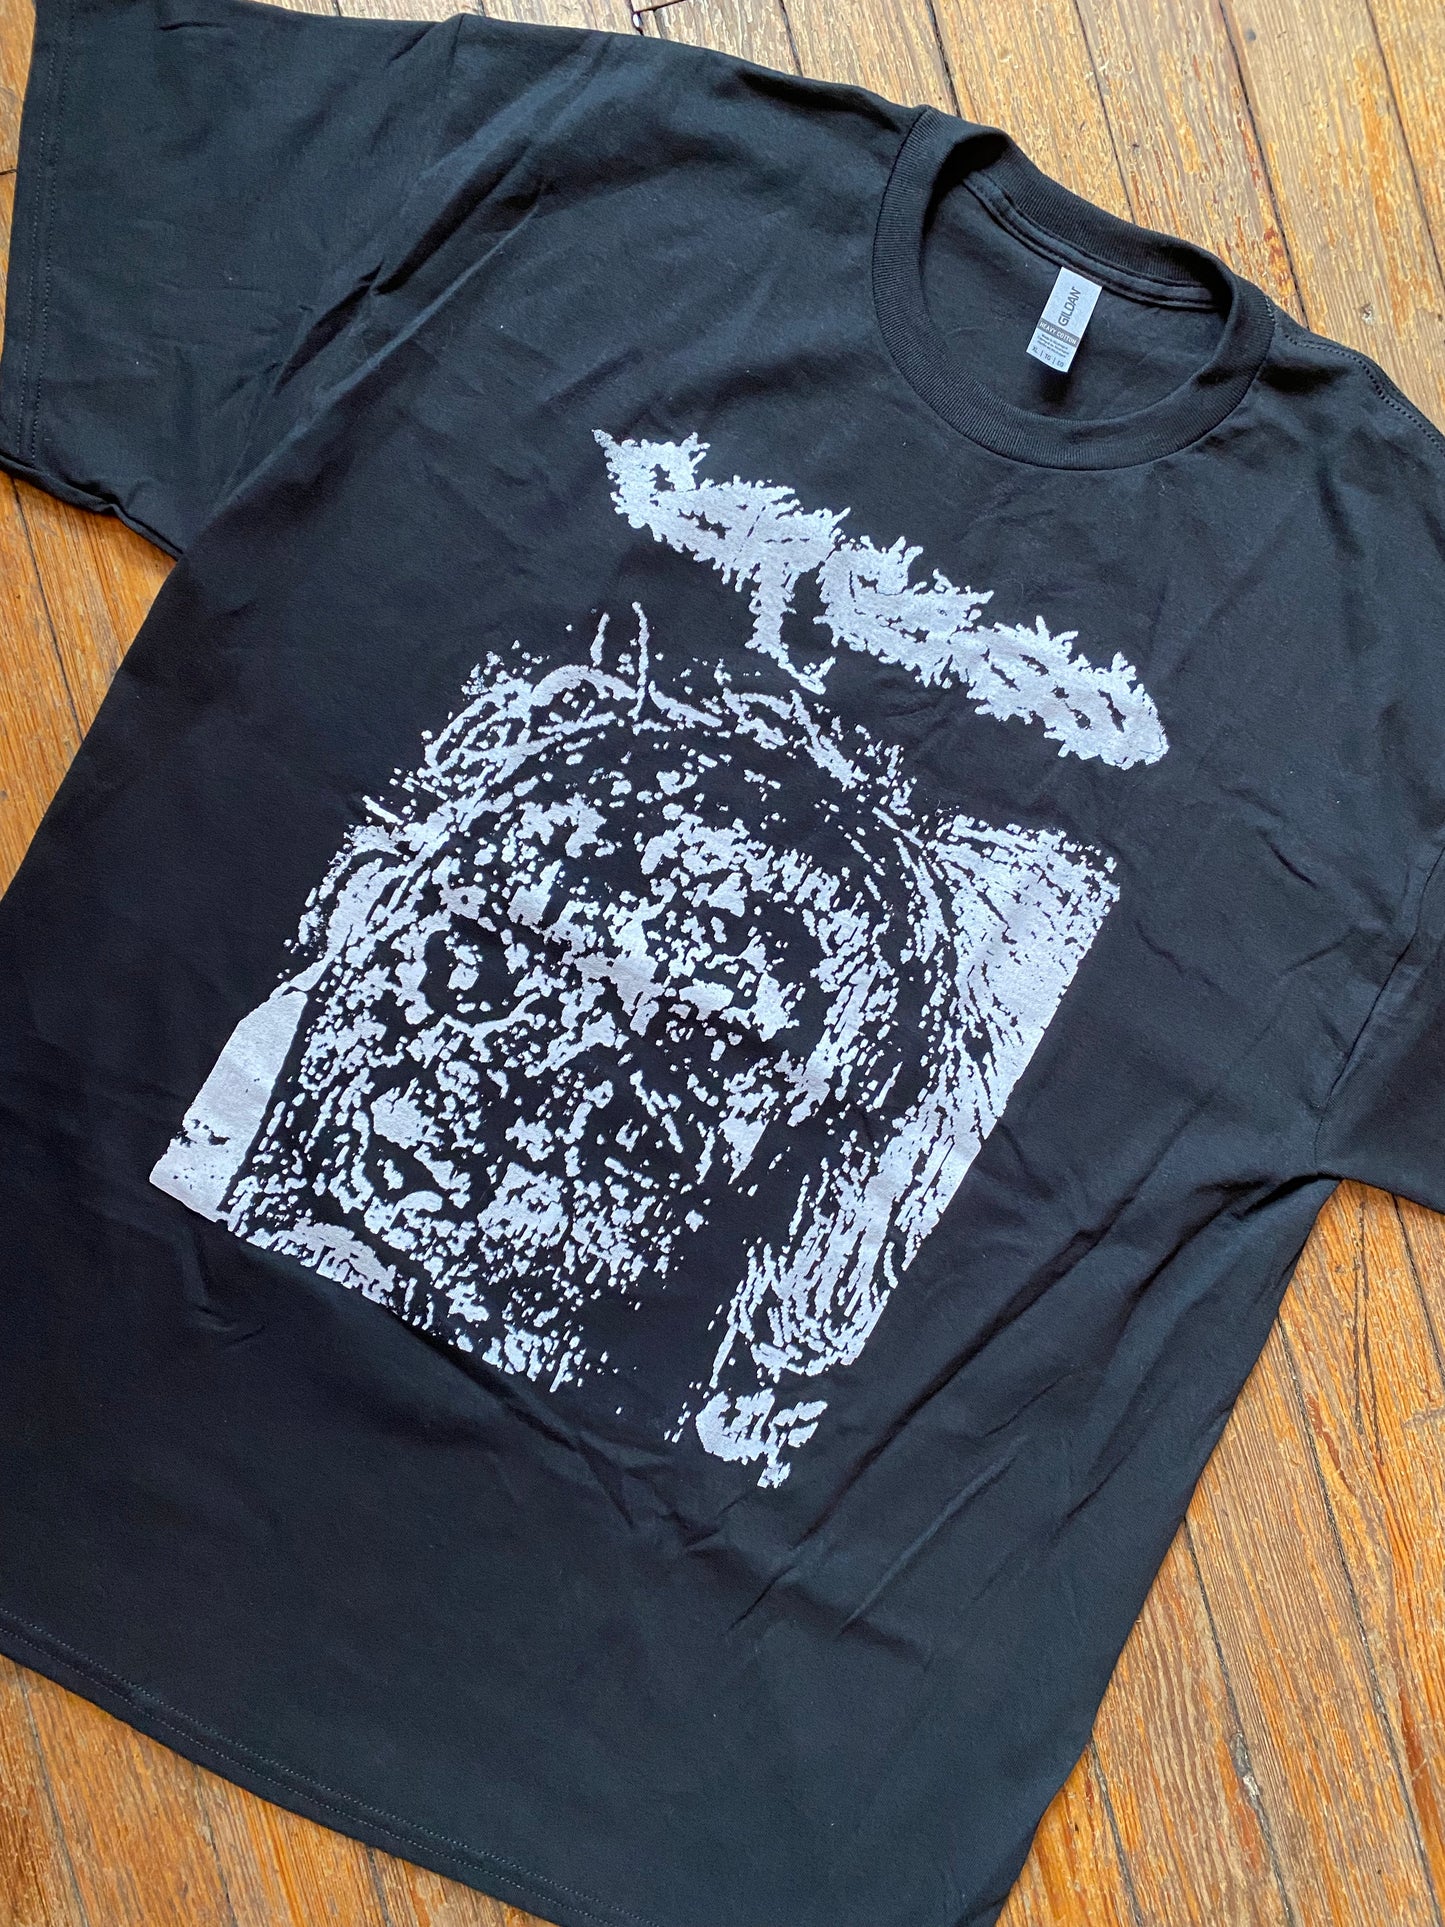 Carcass Bootleg T-Shirt